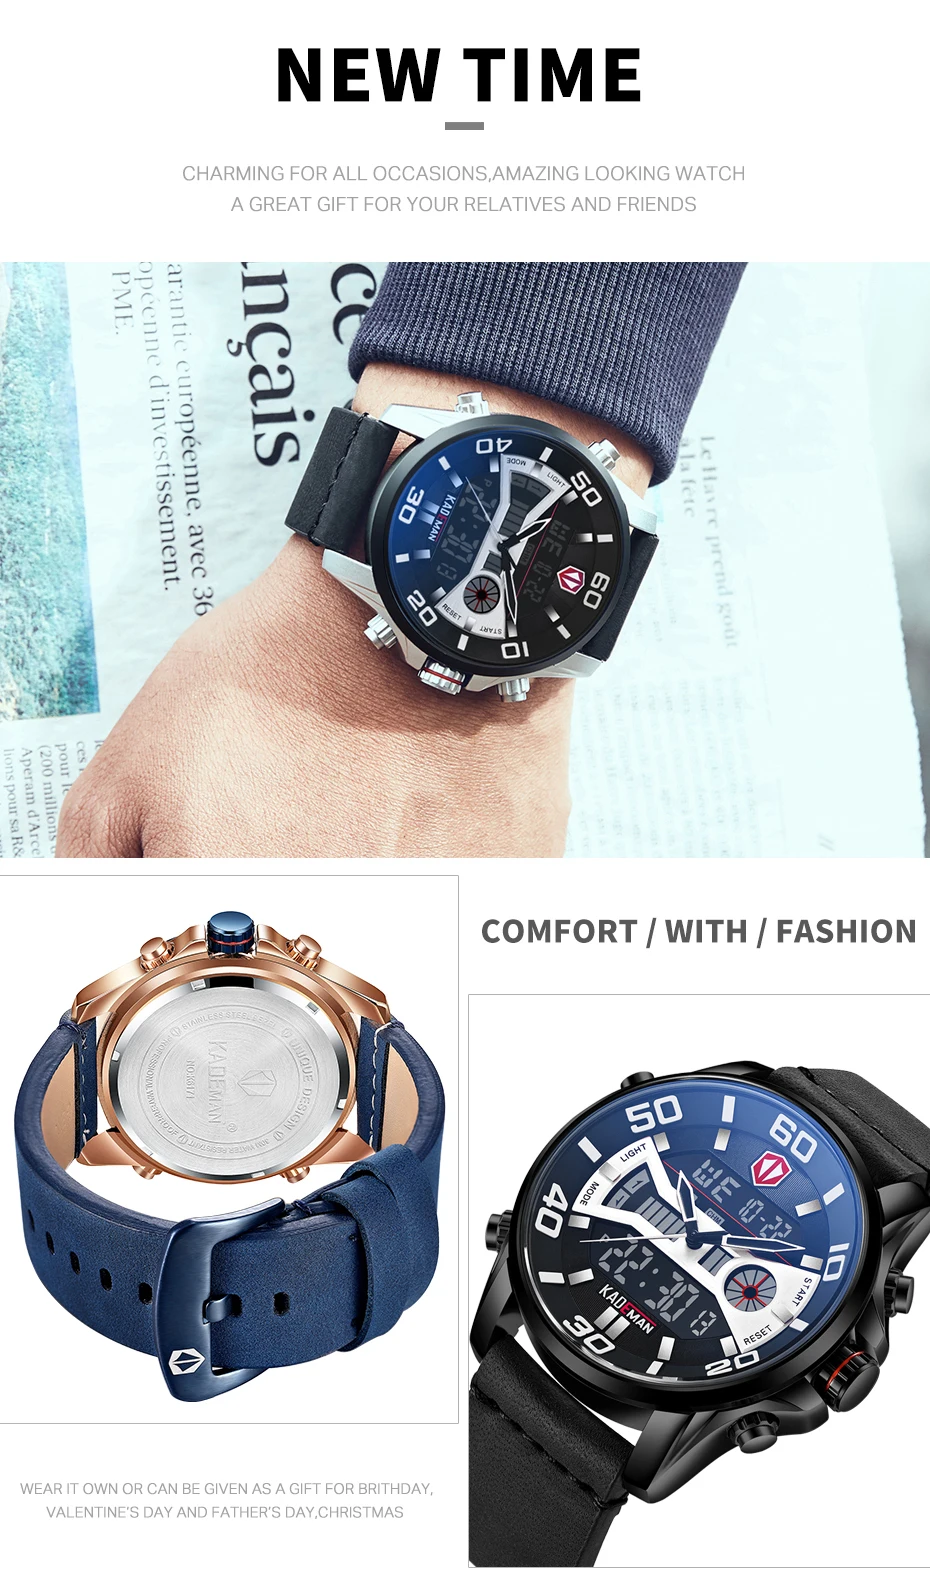 Оригинальные мужские часы KADEMAN New Tech Series Роскошные спортивные часы 3ATM светодиодный дисплей наручные часы повседневные кожаные часы Relogio Masculino